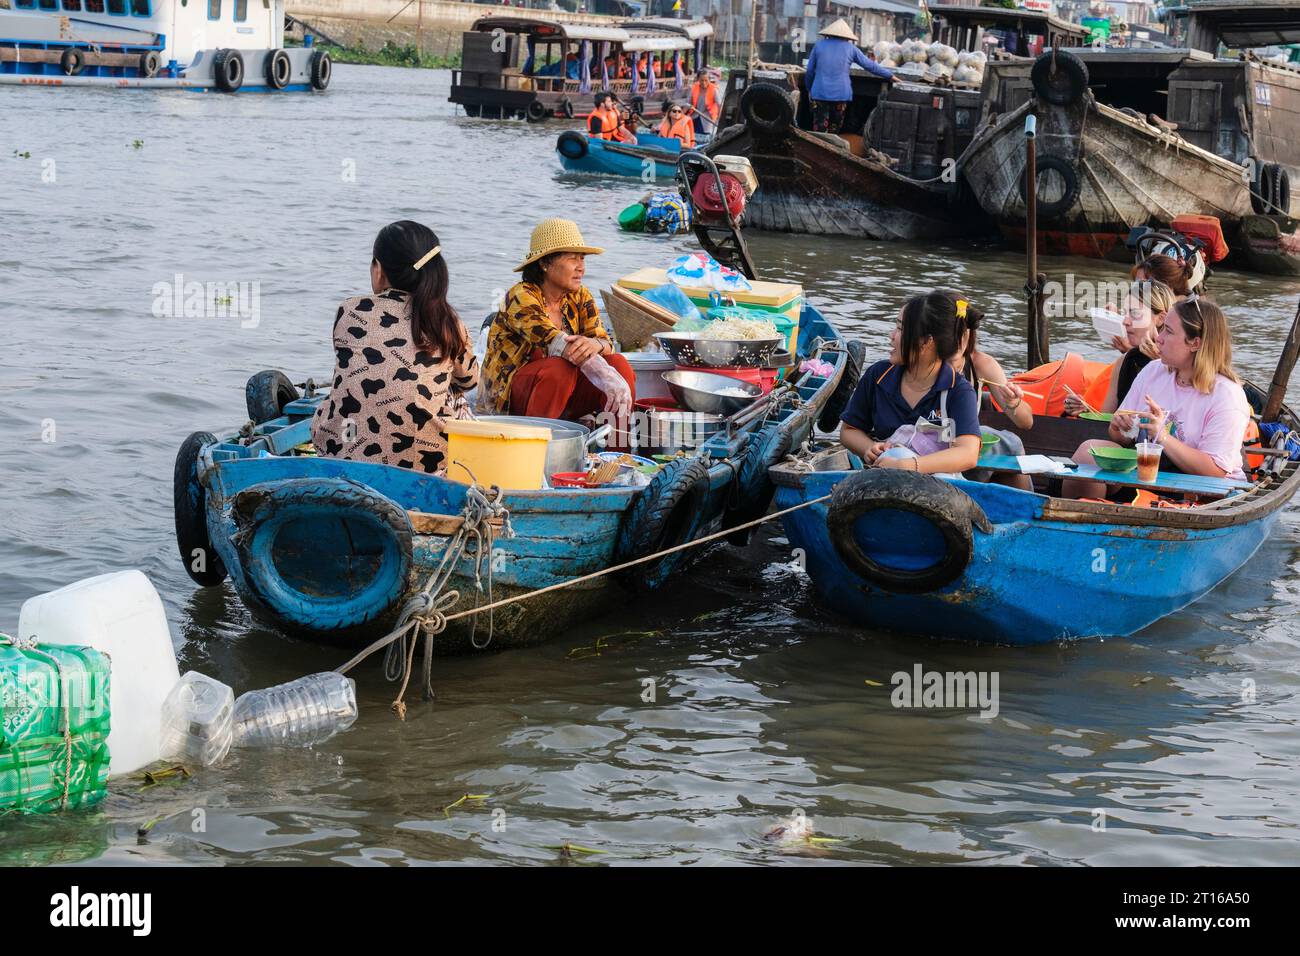 Scène du marché flottant de Phong Dien, près de CAN Tho, Vietnam. Touristes ayant petit déjeuner Banque D'Images